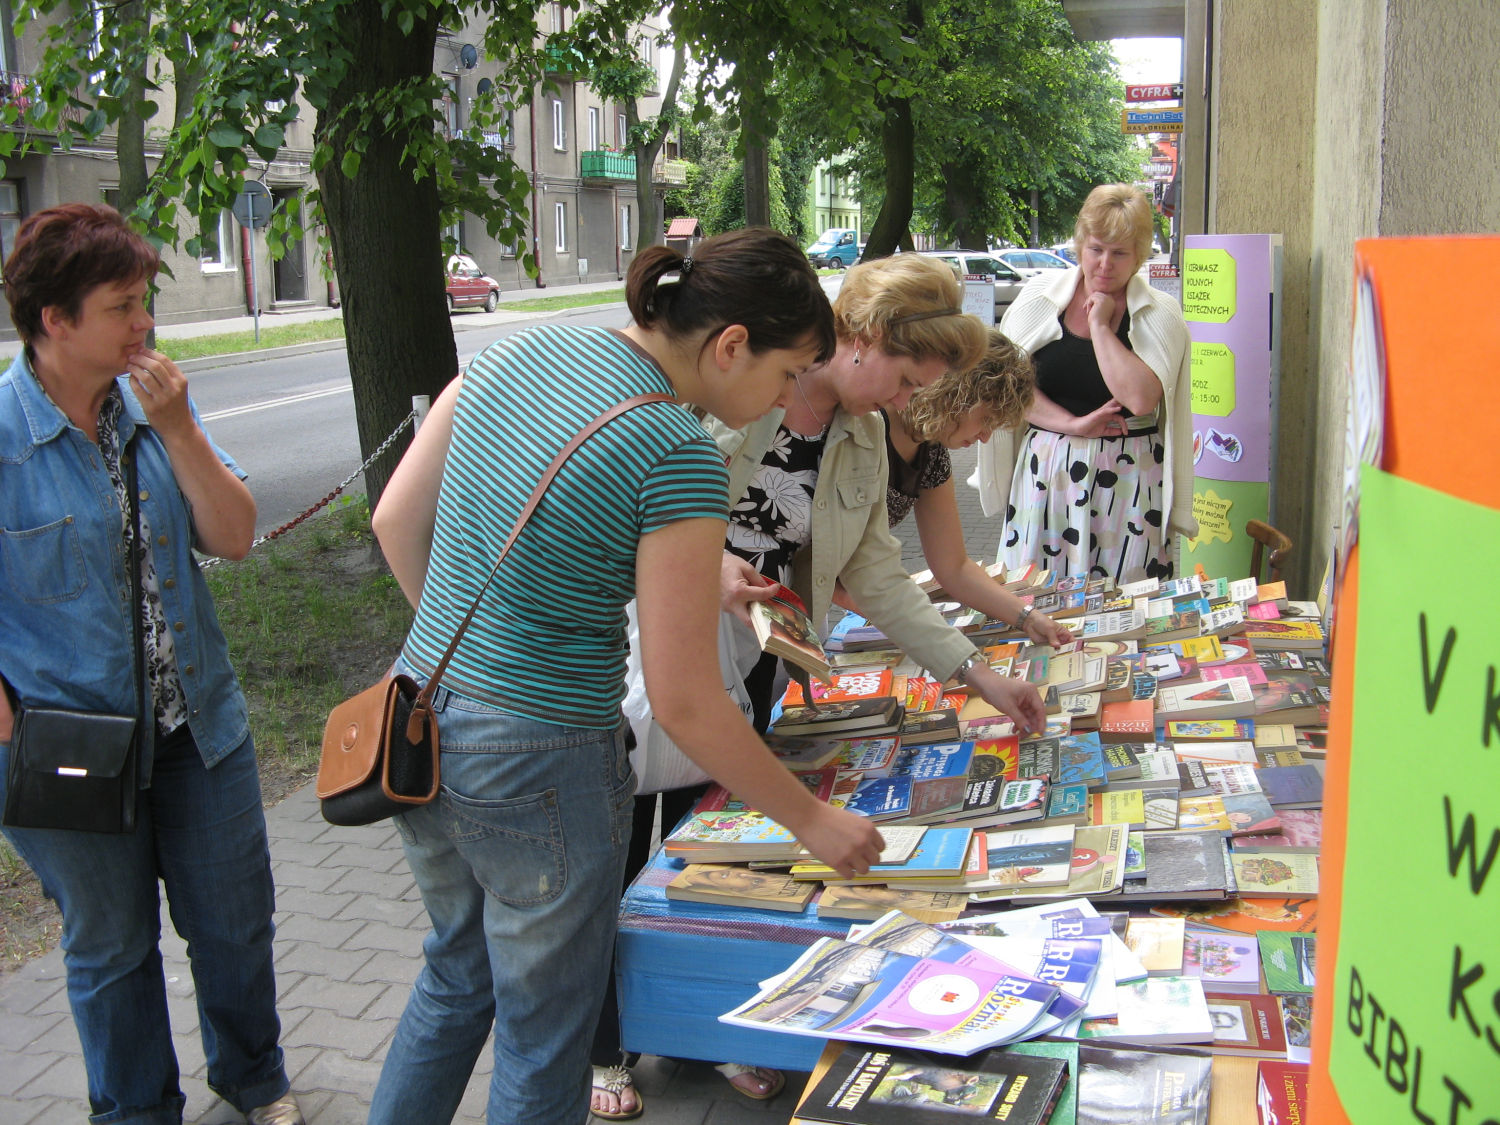 V Kiermasz Wolnych Ksiek zorganizowany przez Miejsk Bibliotek Publiczn w Sierpcu, 28.05.-1.06.2012  r.